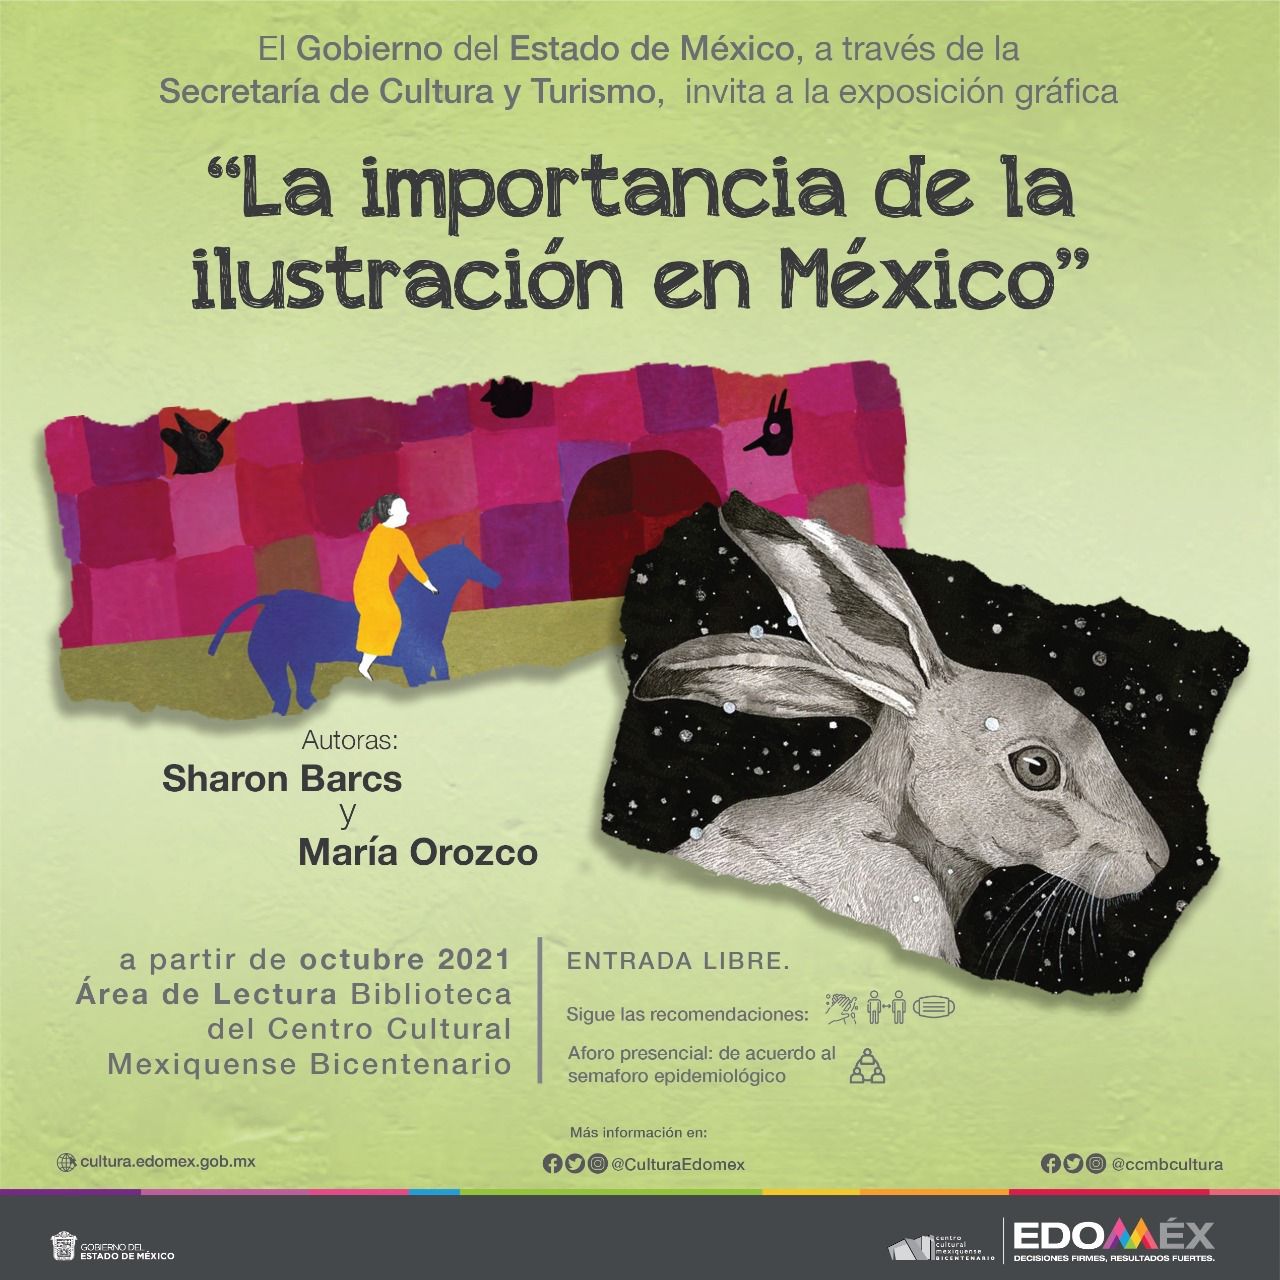 Exhibe Centro Cultural Mexiquense Bicentenario “La importancia de la ilustración en México”